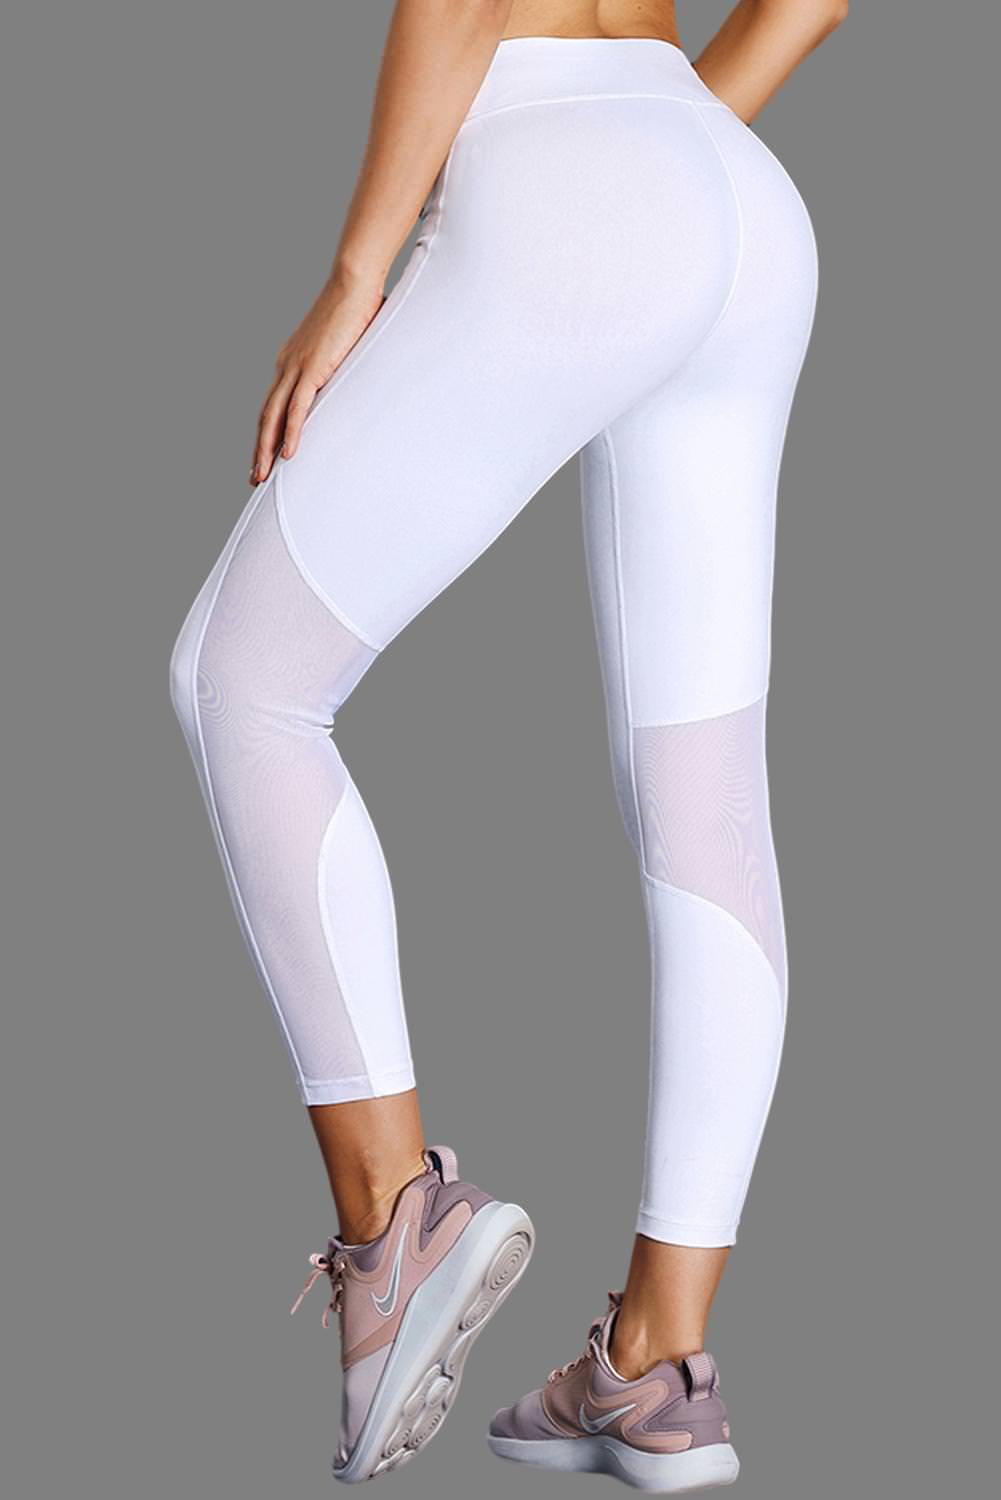 white sport leggings